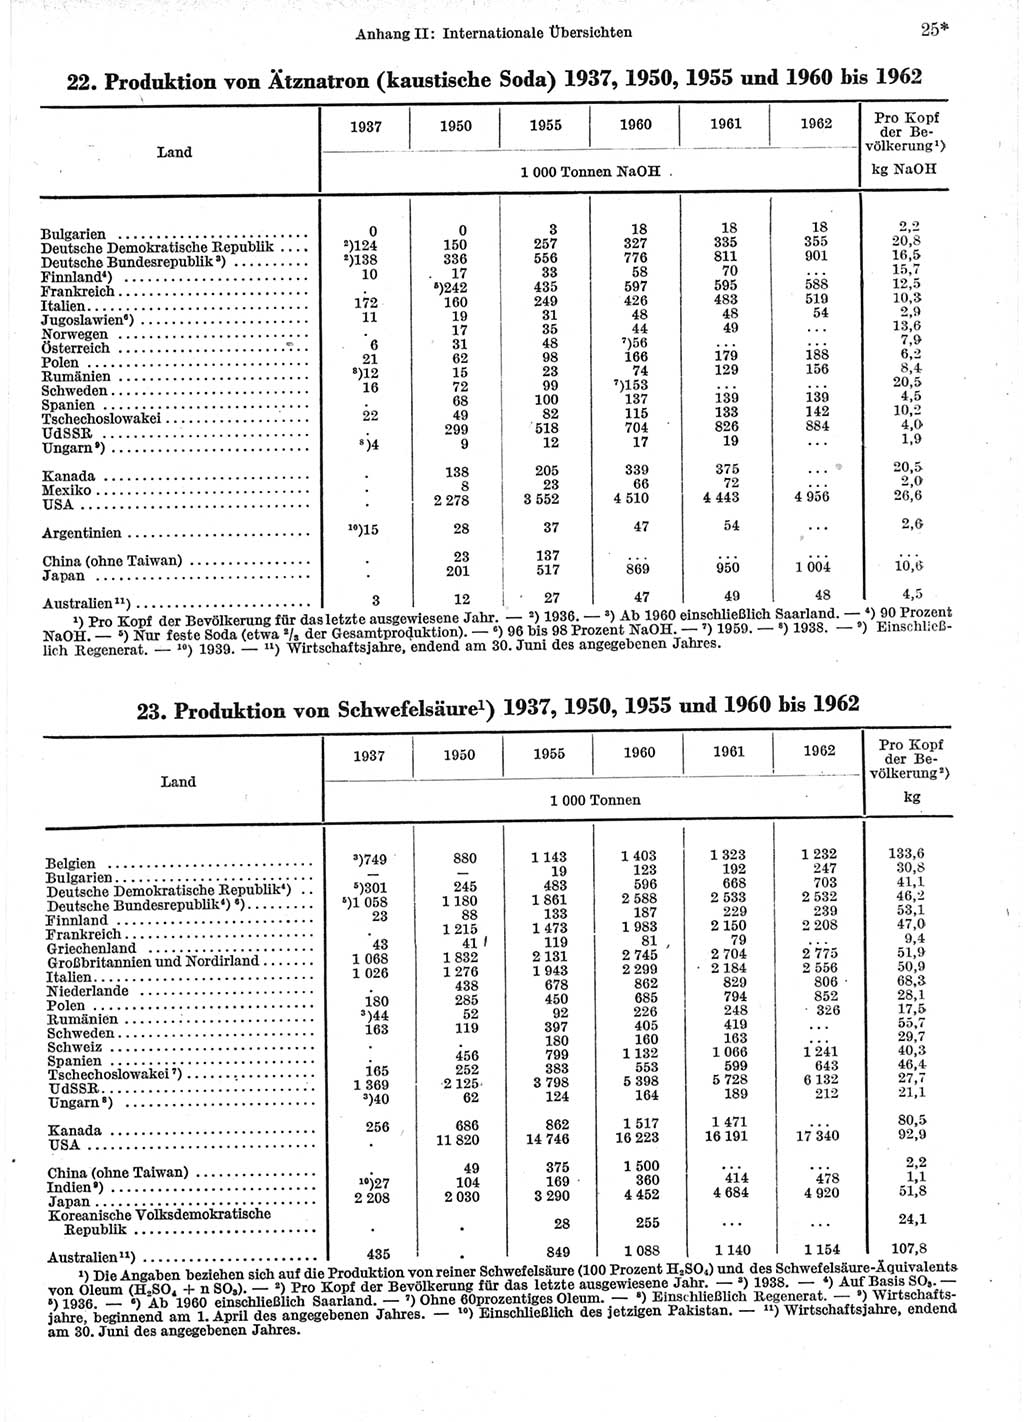 Statistisches Jahrbuch der Deutschen Demokratischen Republik (DDR) 1964, Seite 25 (Stat. Jb. DDR 1964, S. 25)